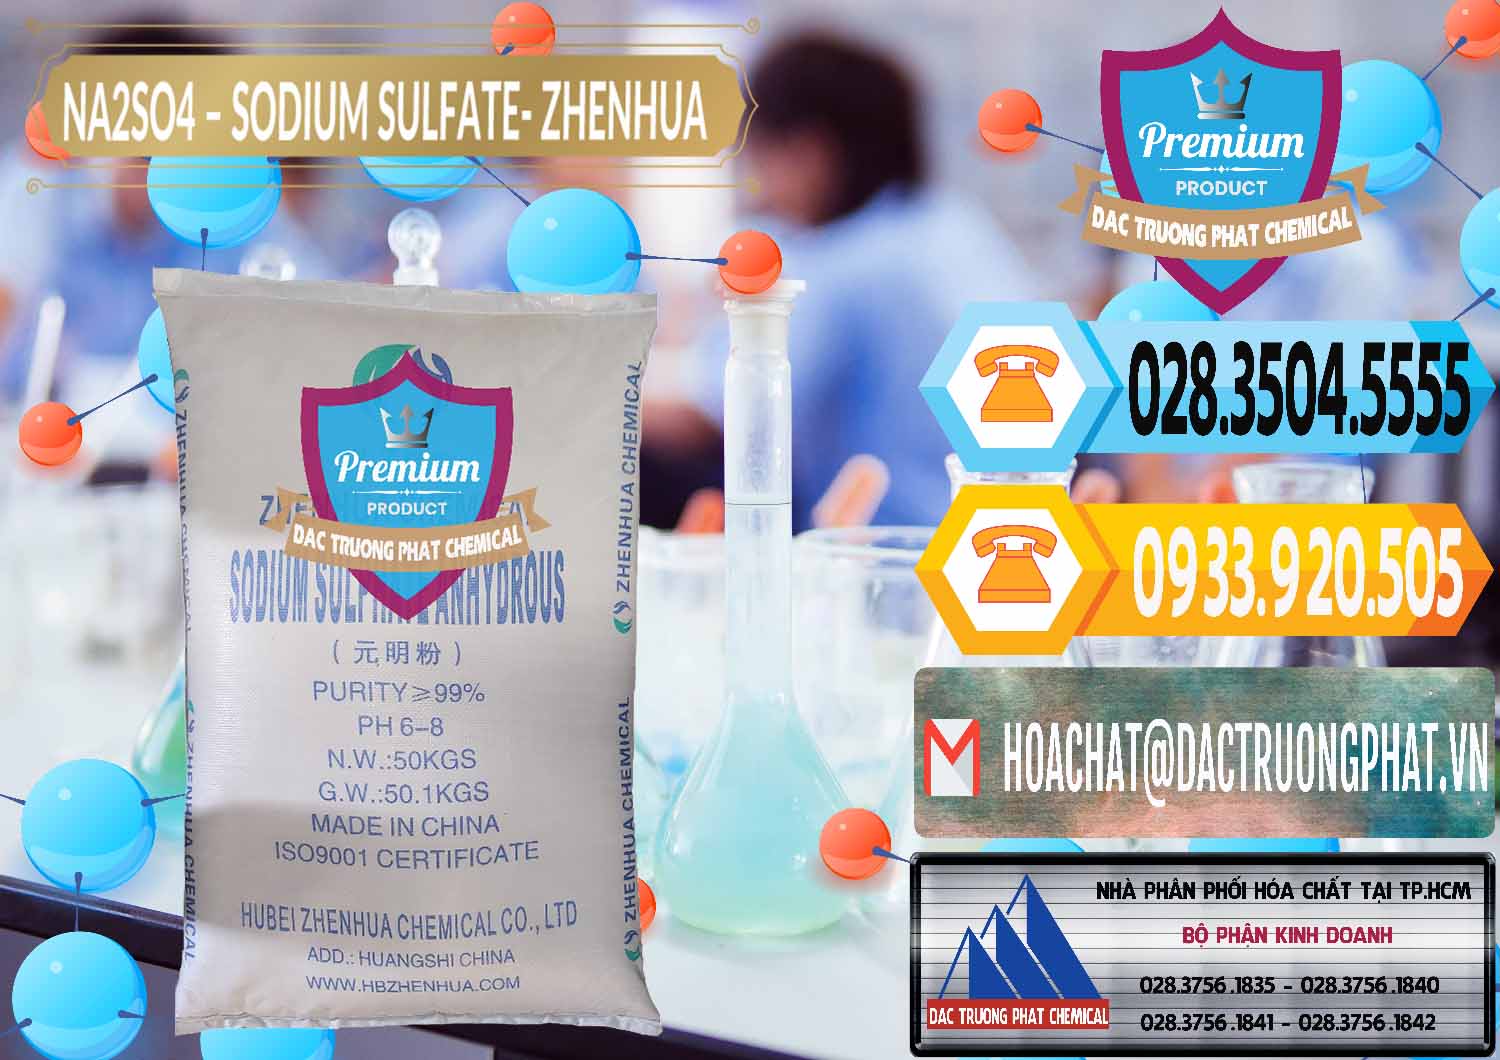 Cty nhập khẩu & bán Sodium Sulphate - Muối Sunfat Na2SO4 Zhenhua Trung Quốc China - 0101 - Chuyên bán _ cung cấp hóa chất tại TP.HCM - hoachattayrua.net